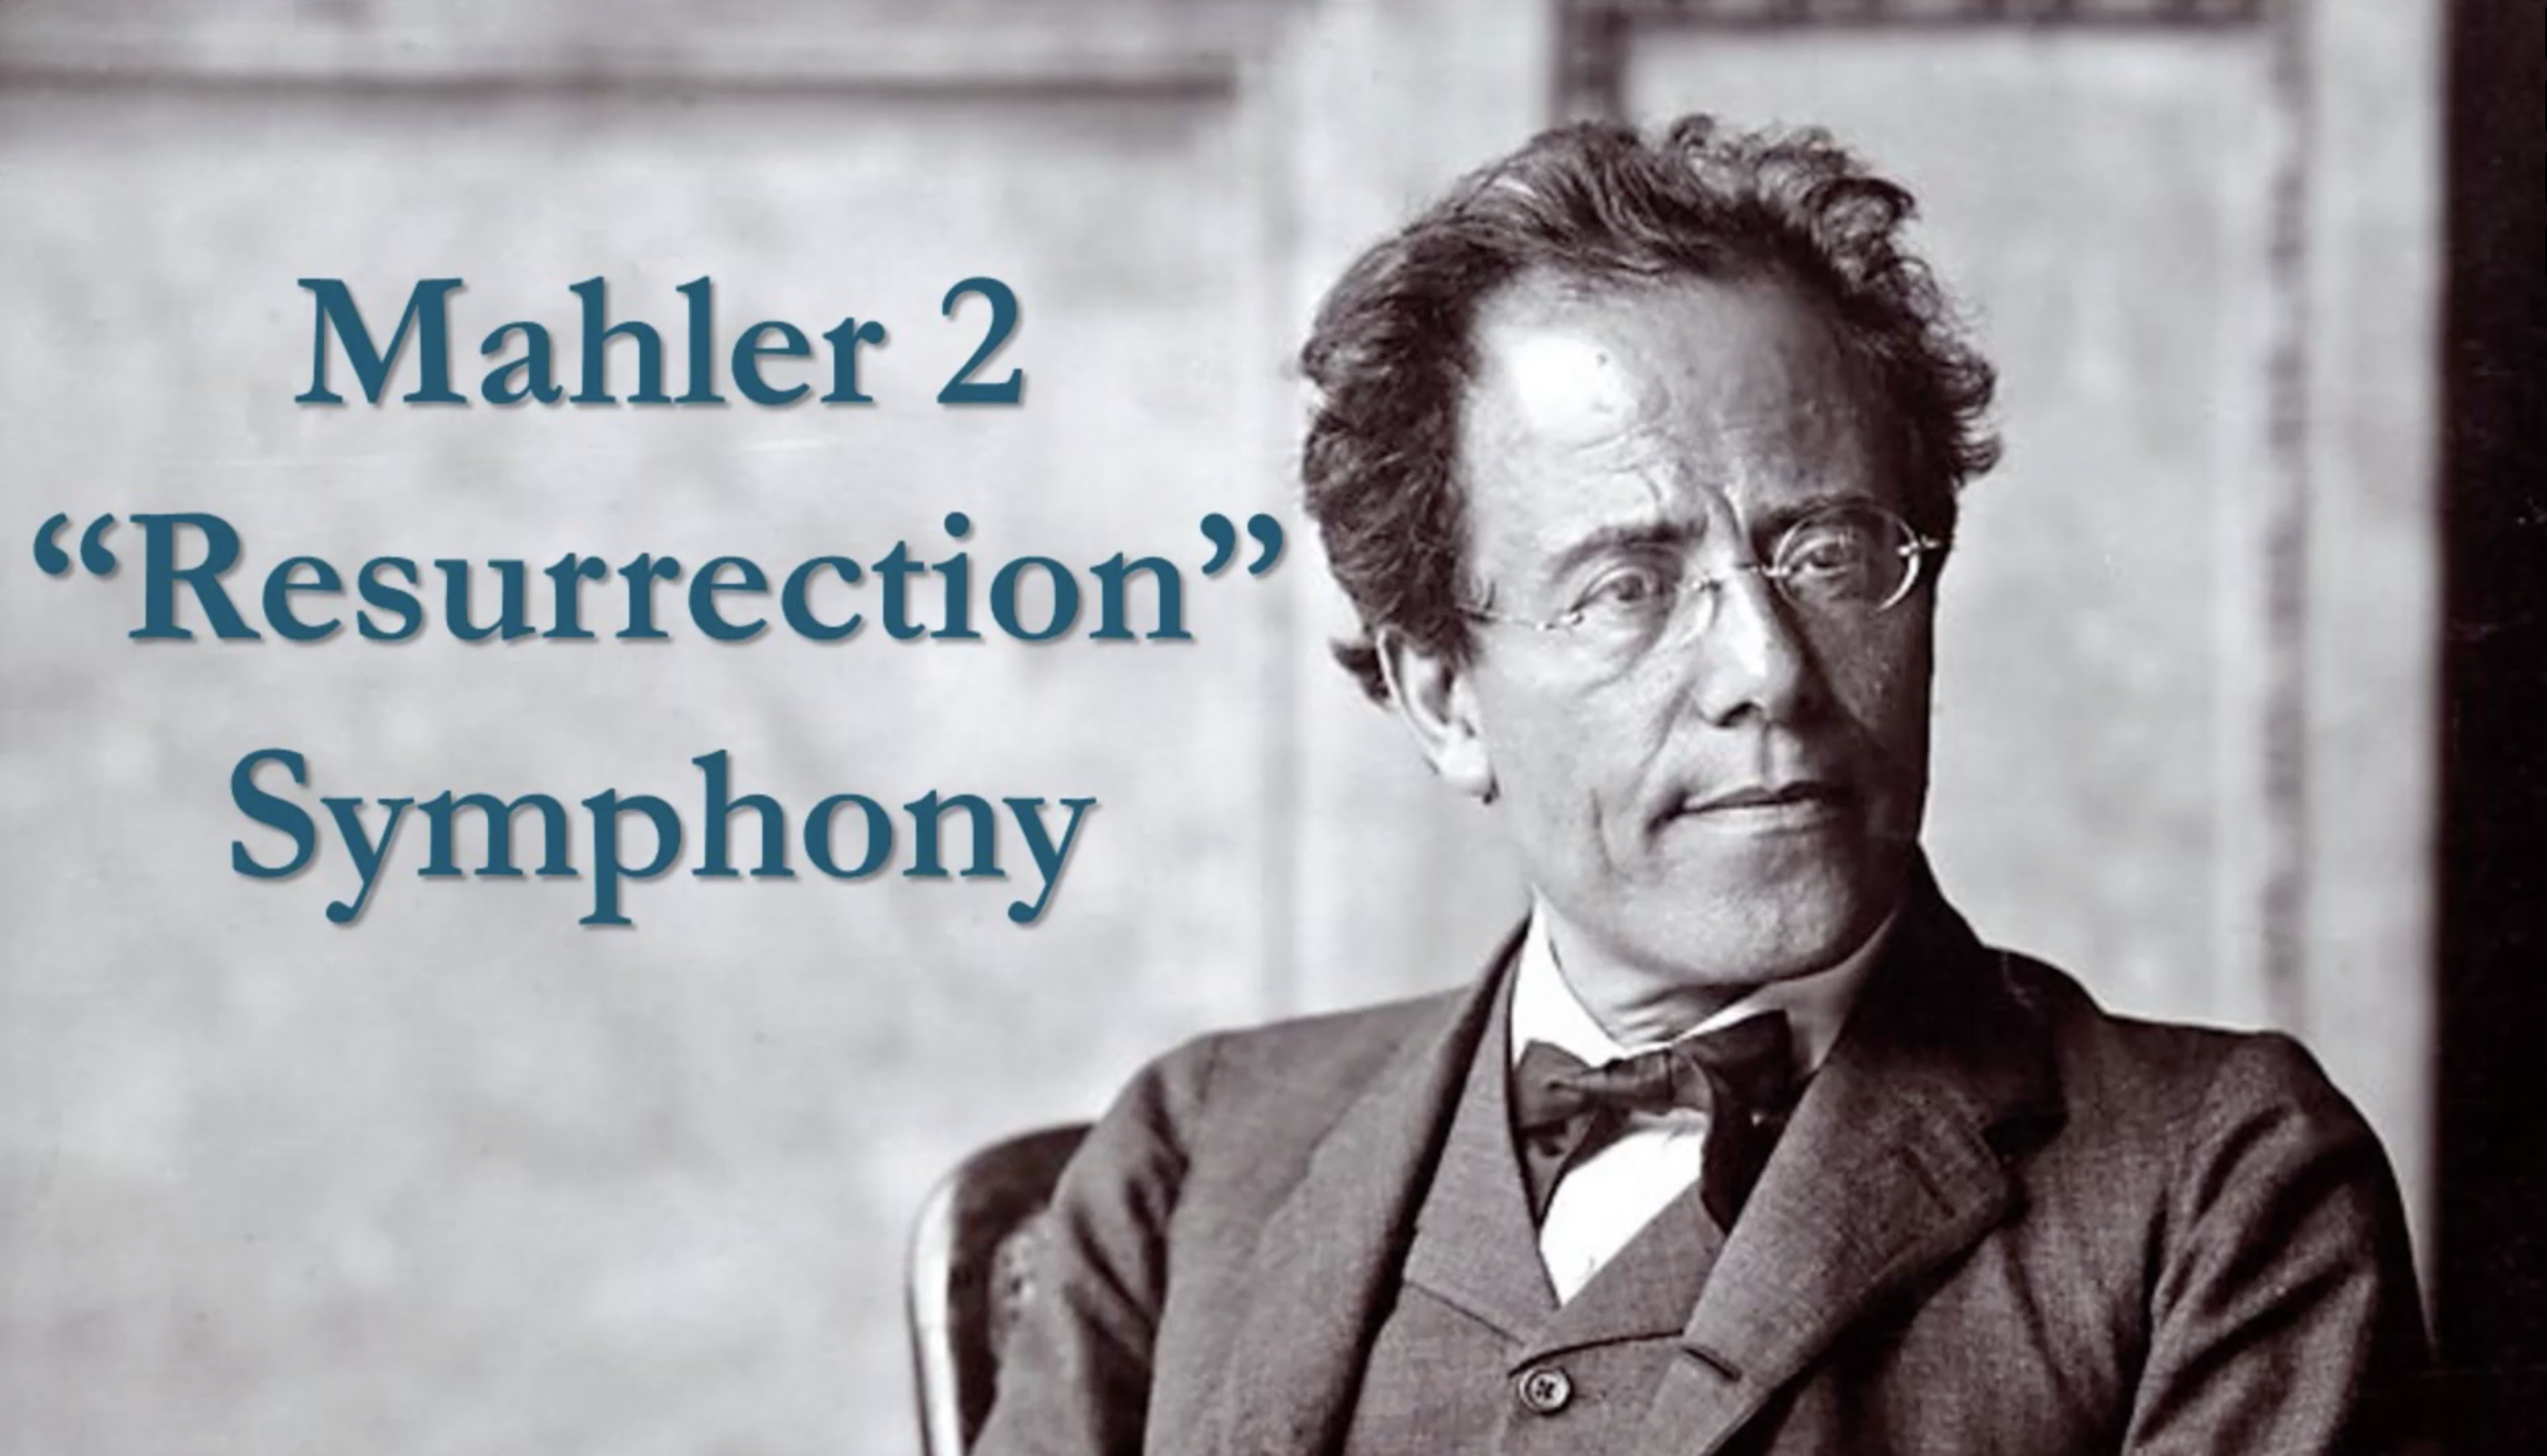 Mahler 2 “Resurrection” Symphony